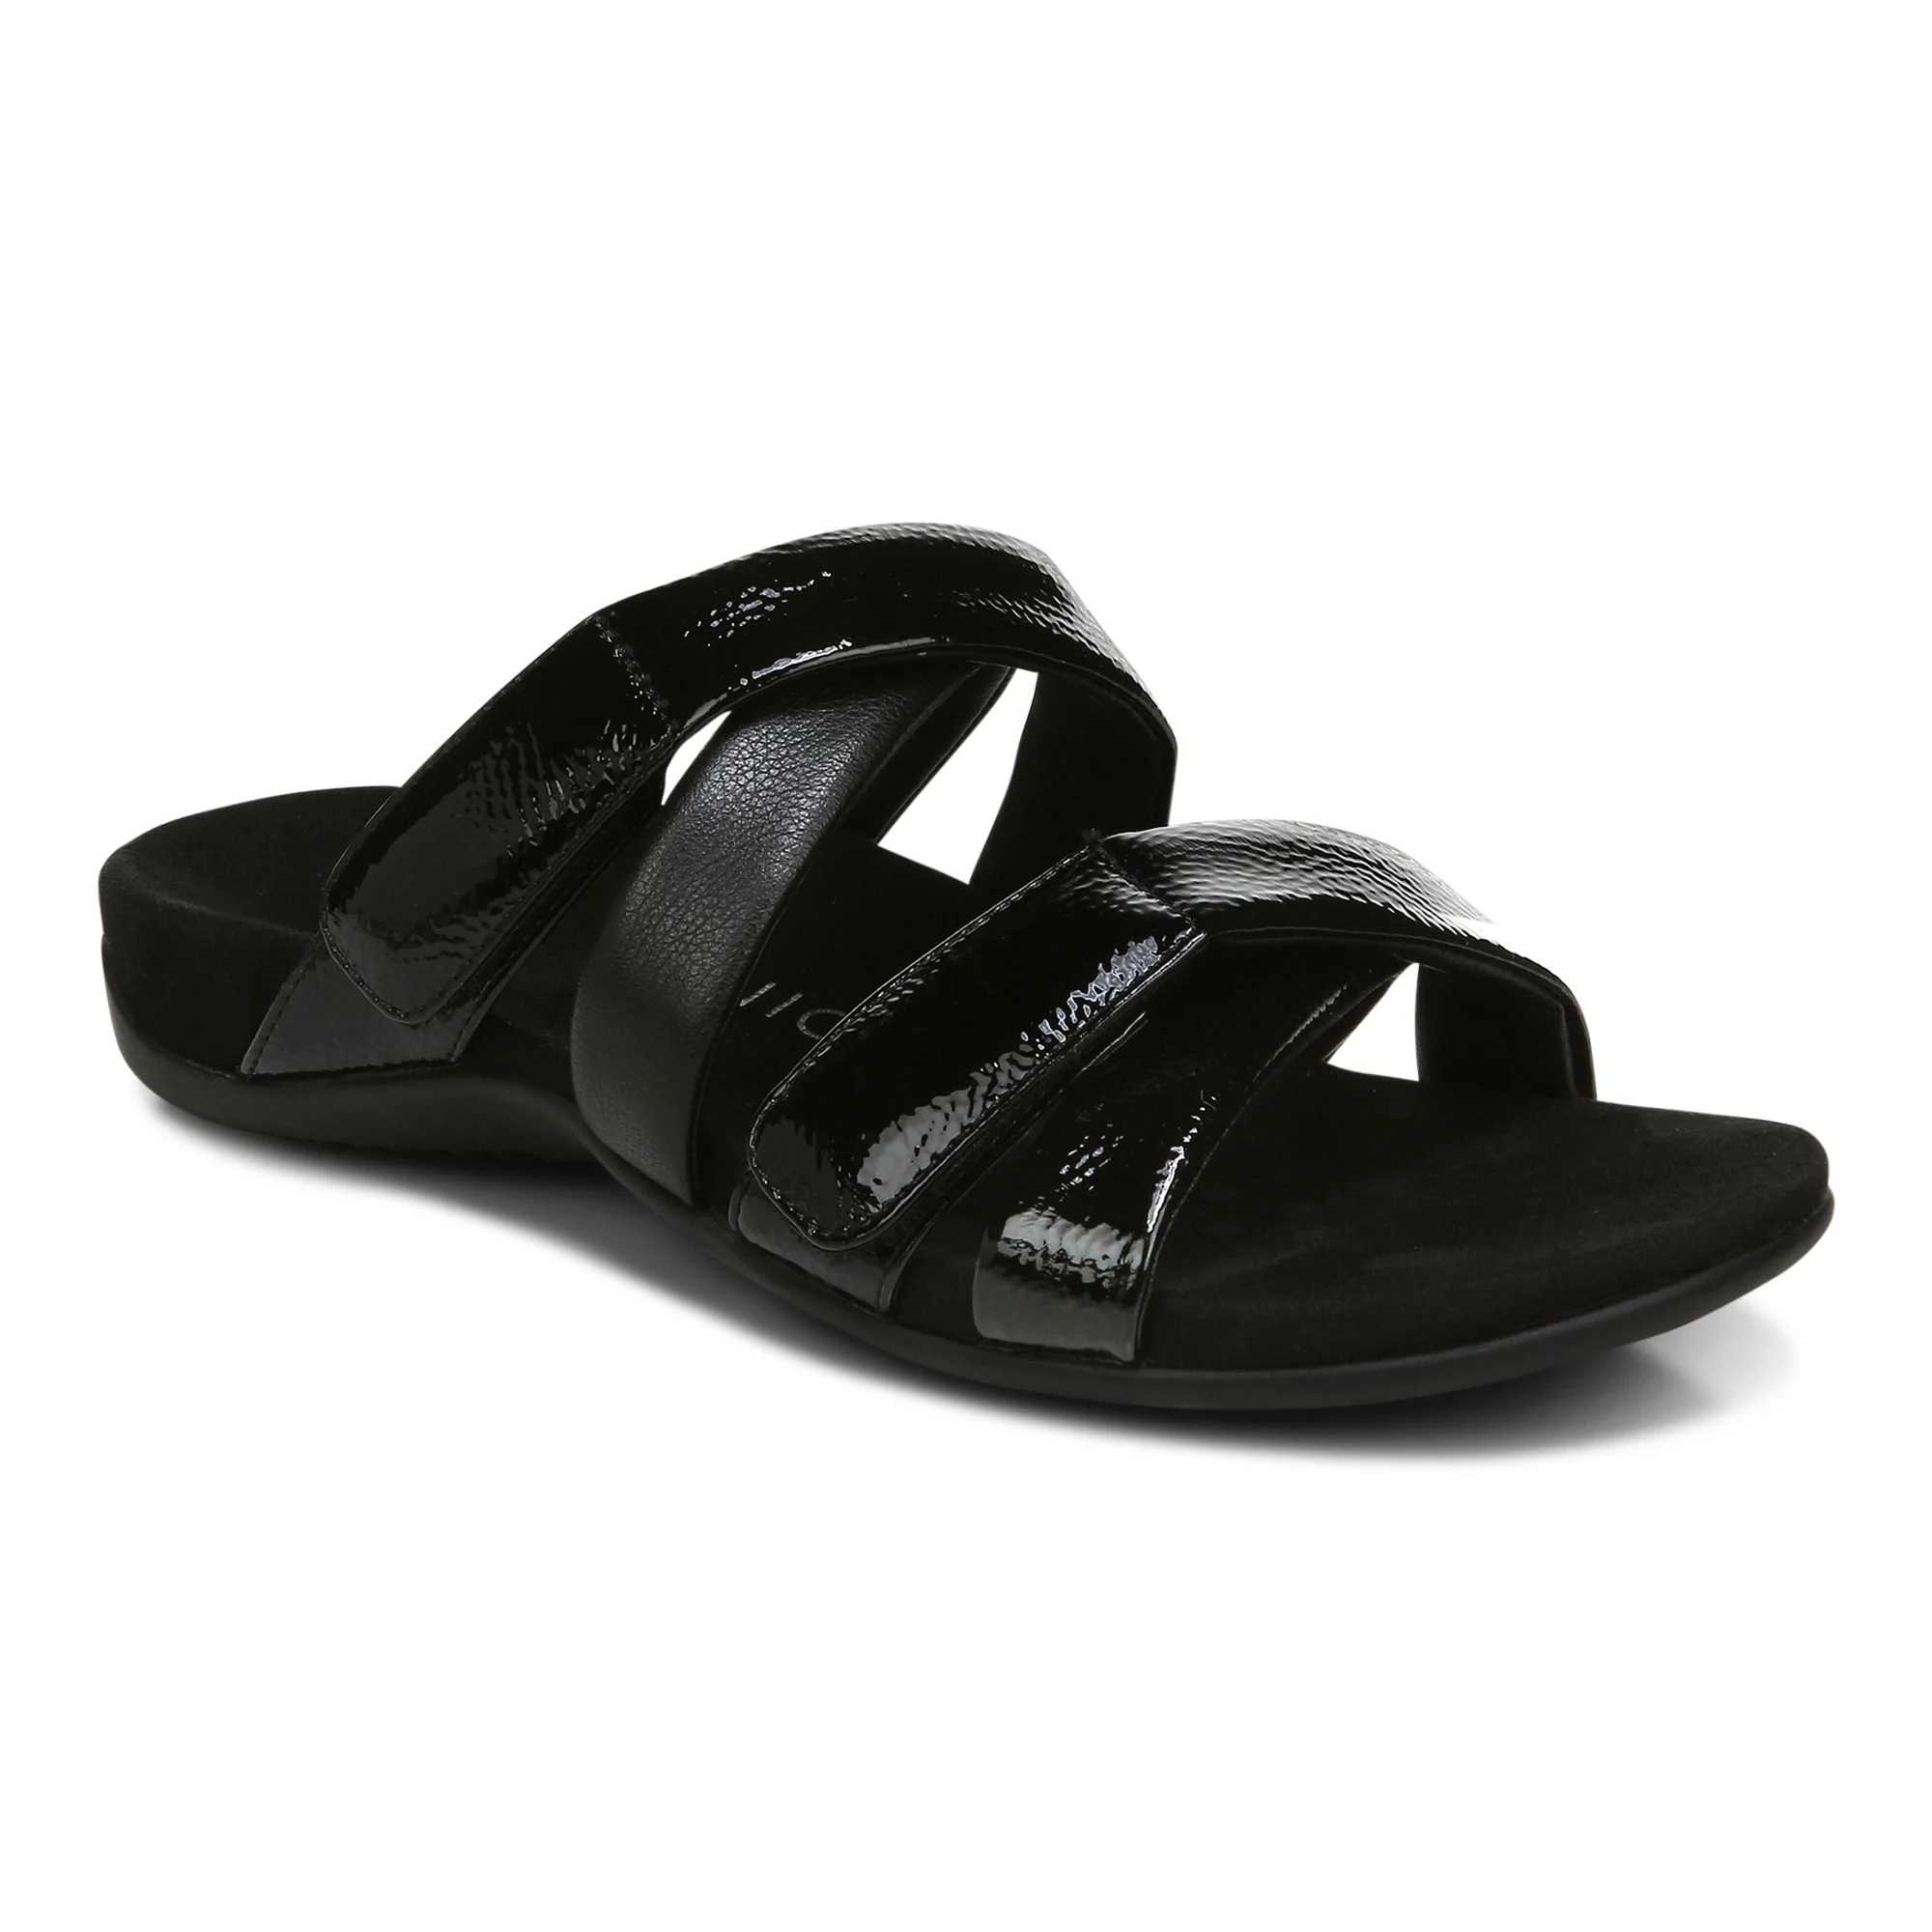 Vionic Prism Women's Sandals Black : 6.5 M